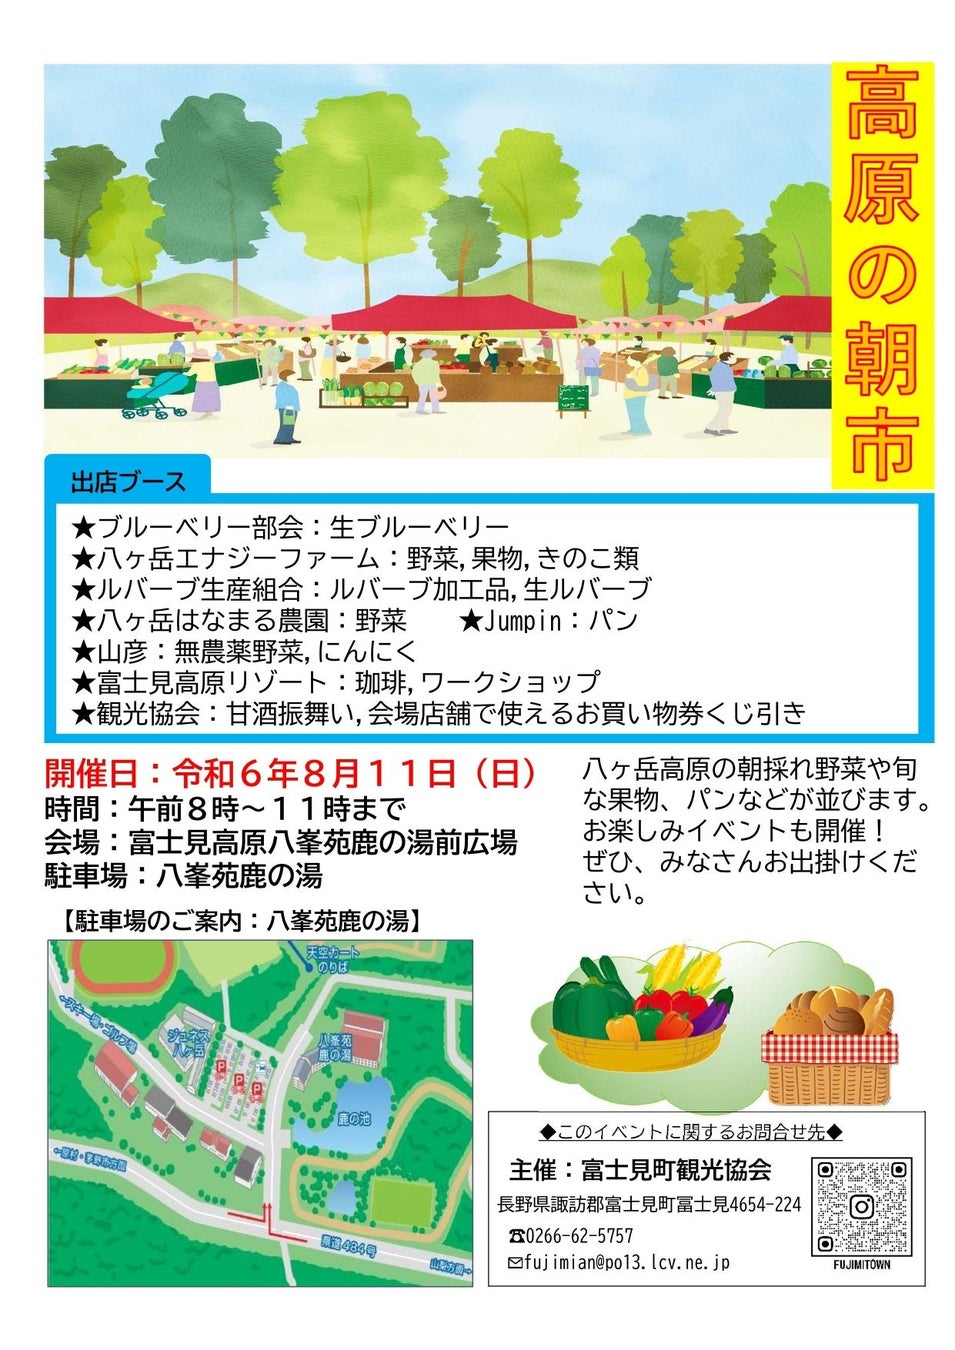 富士見高原八峯苑鹿の湯前広場にて高原の朝市を開催します。